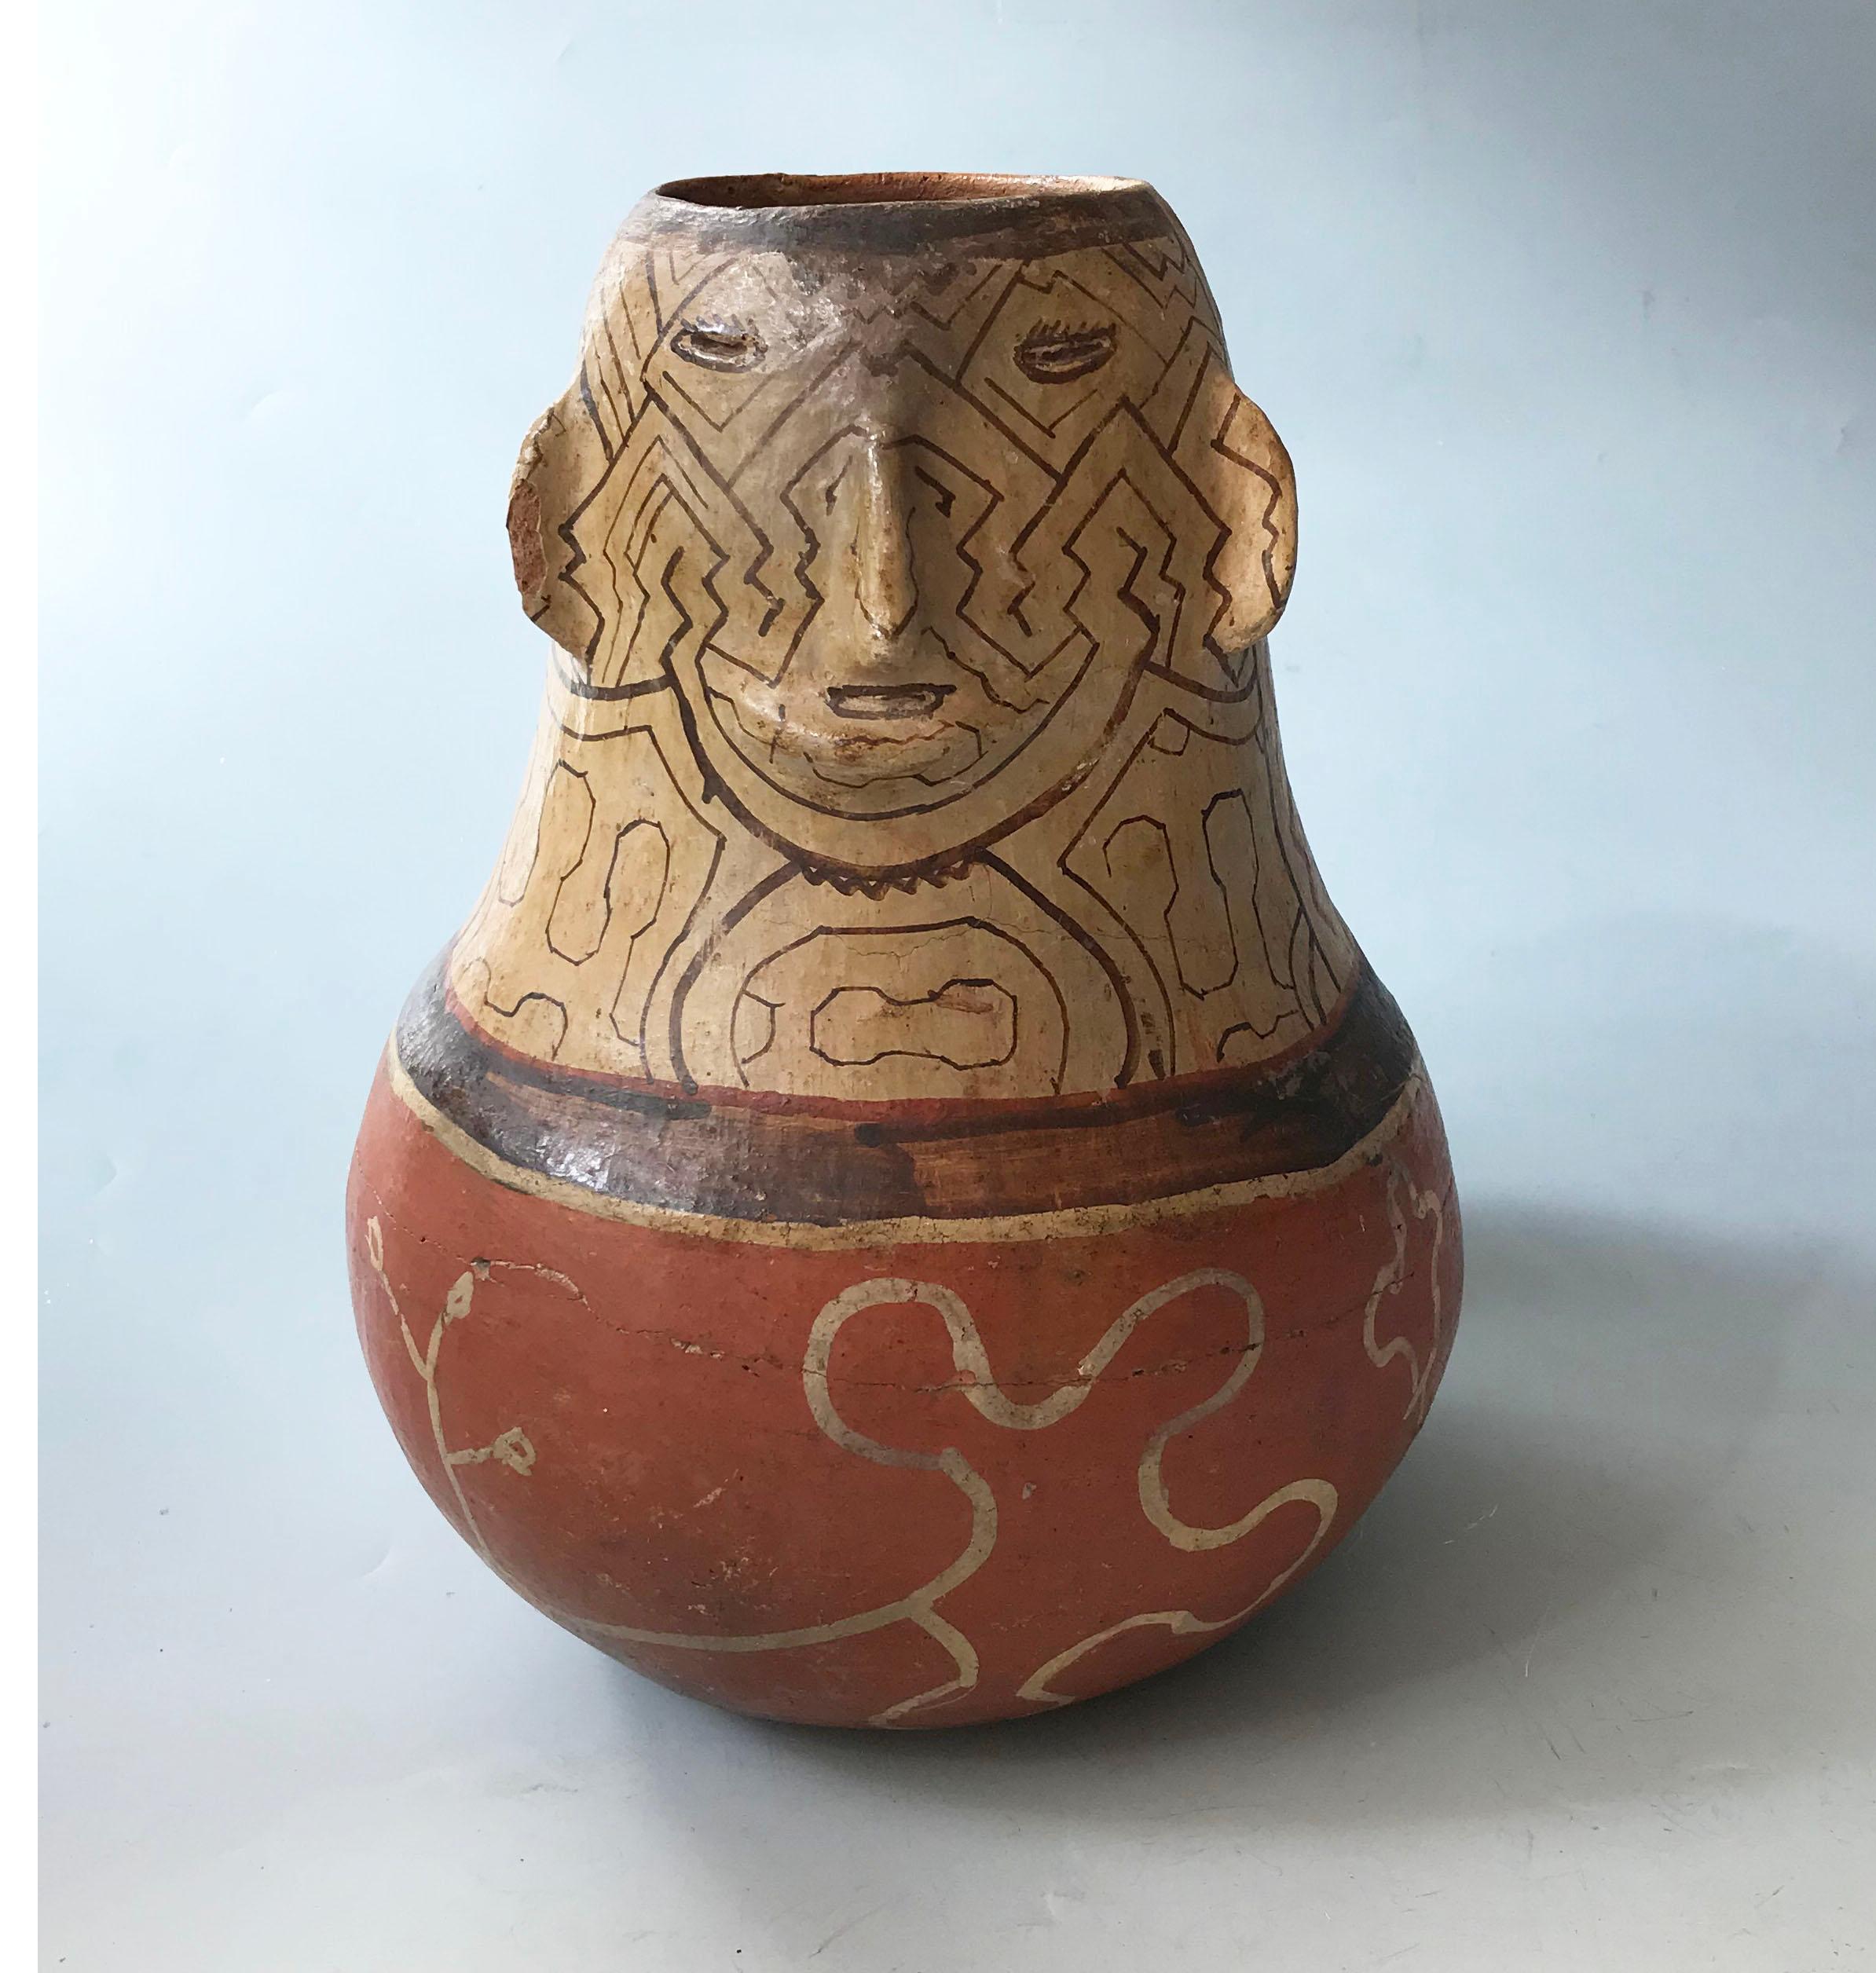 Schönes altes Shipibo-Keramikgefäß aus dem peruanischen Amazonasgebiet
Ein sehr schönes altes Shipibo-Keramikgefäß aus dem peruanischen Amazonasgebiet. Der obere Teil ist mit Gesichtselementen und traditionellen Shipibo-Linearmustern versehen, der